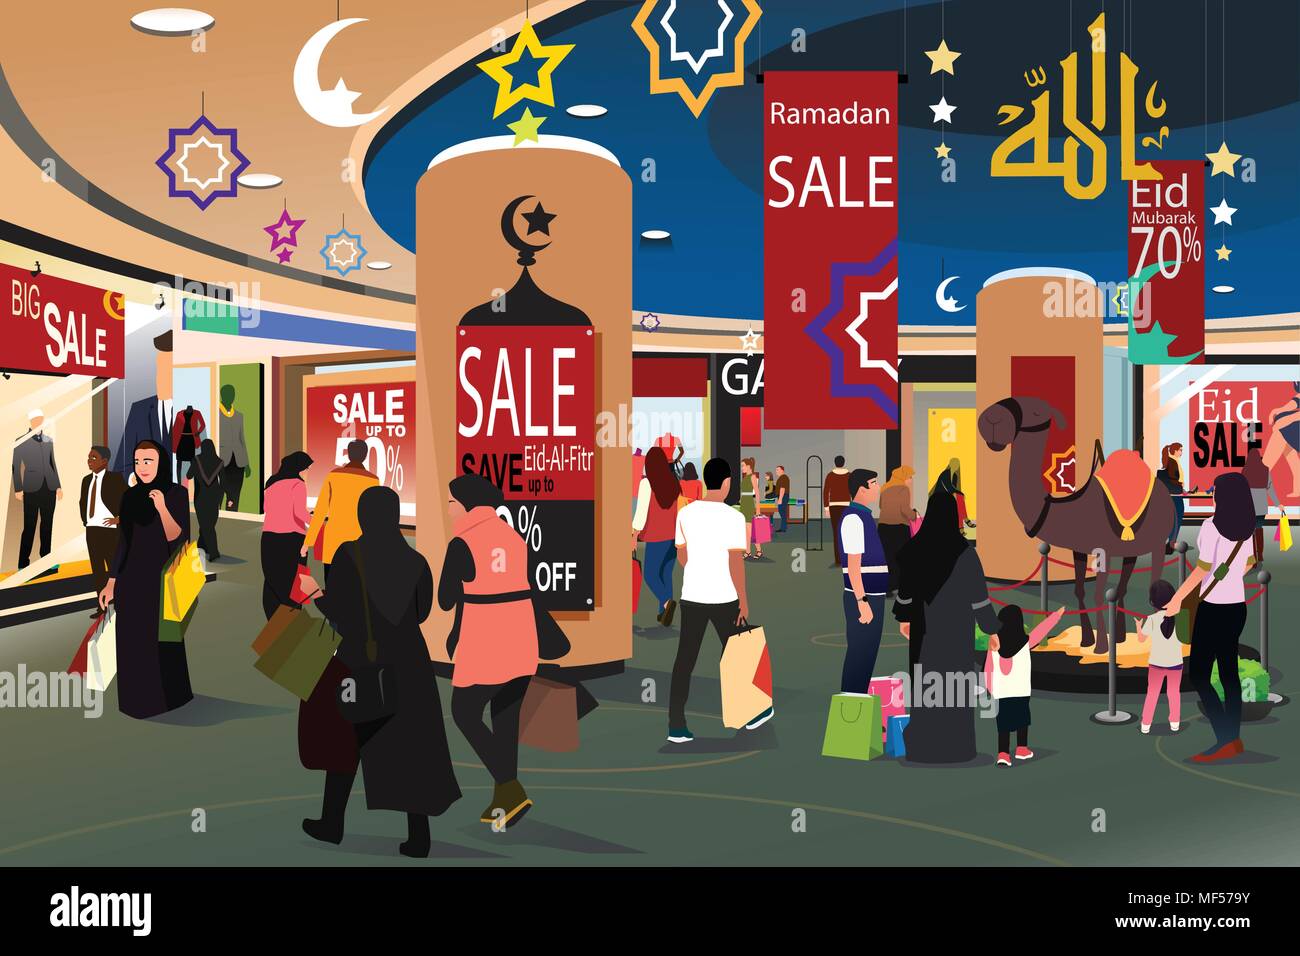 Un vecteur illustration de peuple musulman Shopping pendant le Ramadan Eid-Al-Fitr Vente Illustration de Vecteur